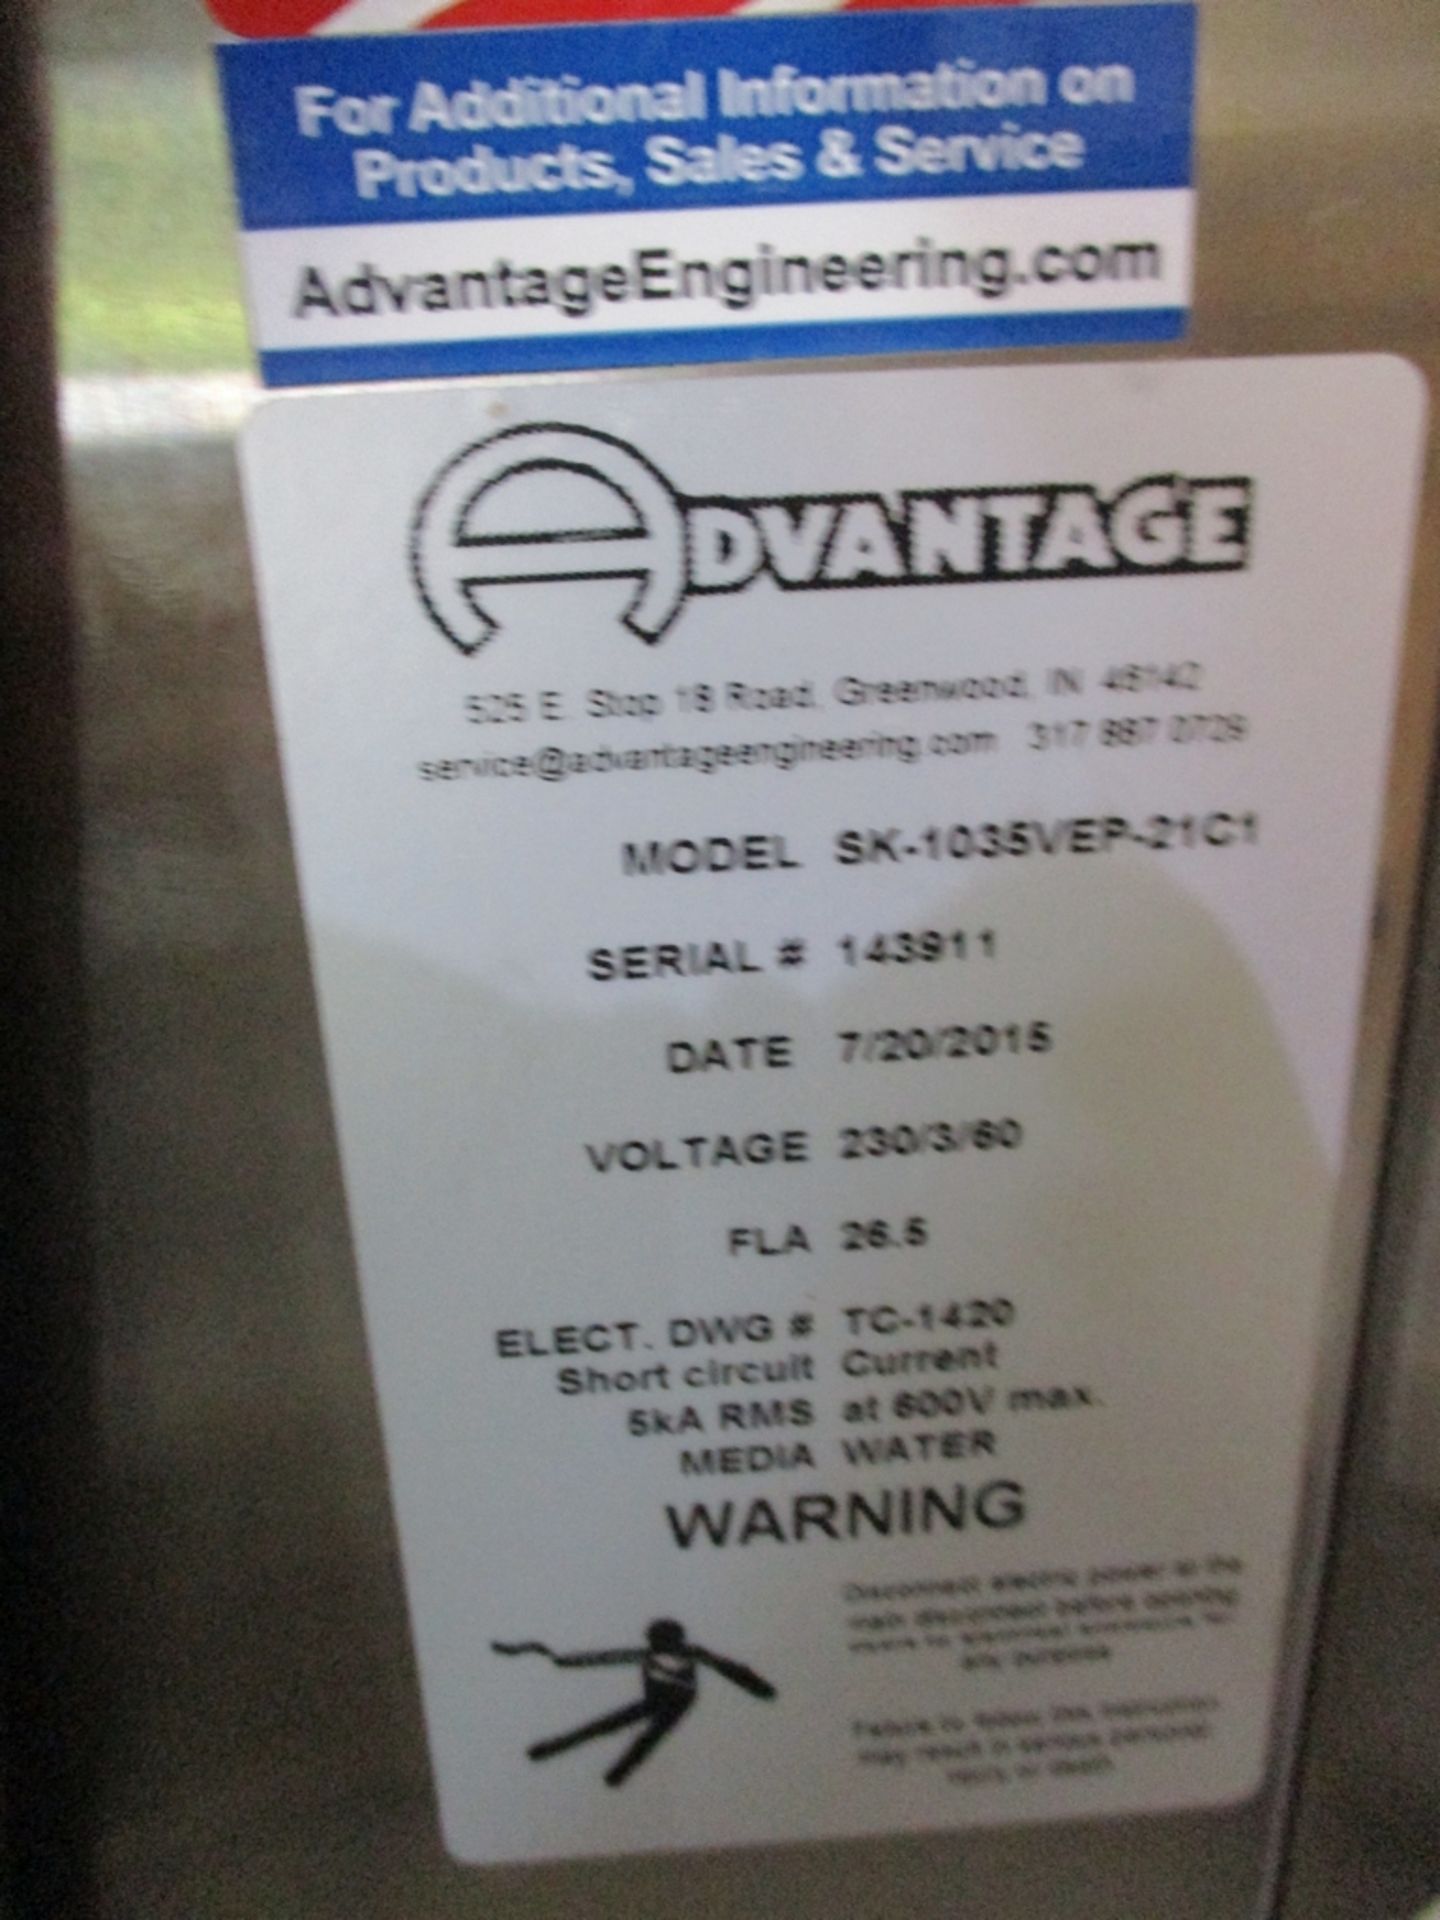 2015 Sentra Advantage PVT Temperature Control Unit - Model: SK-1035VEP-21C1; 230V - Image 2 of 5